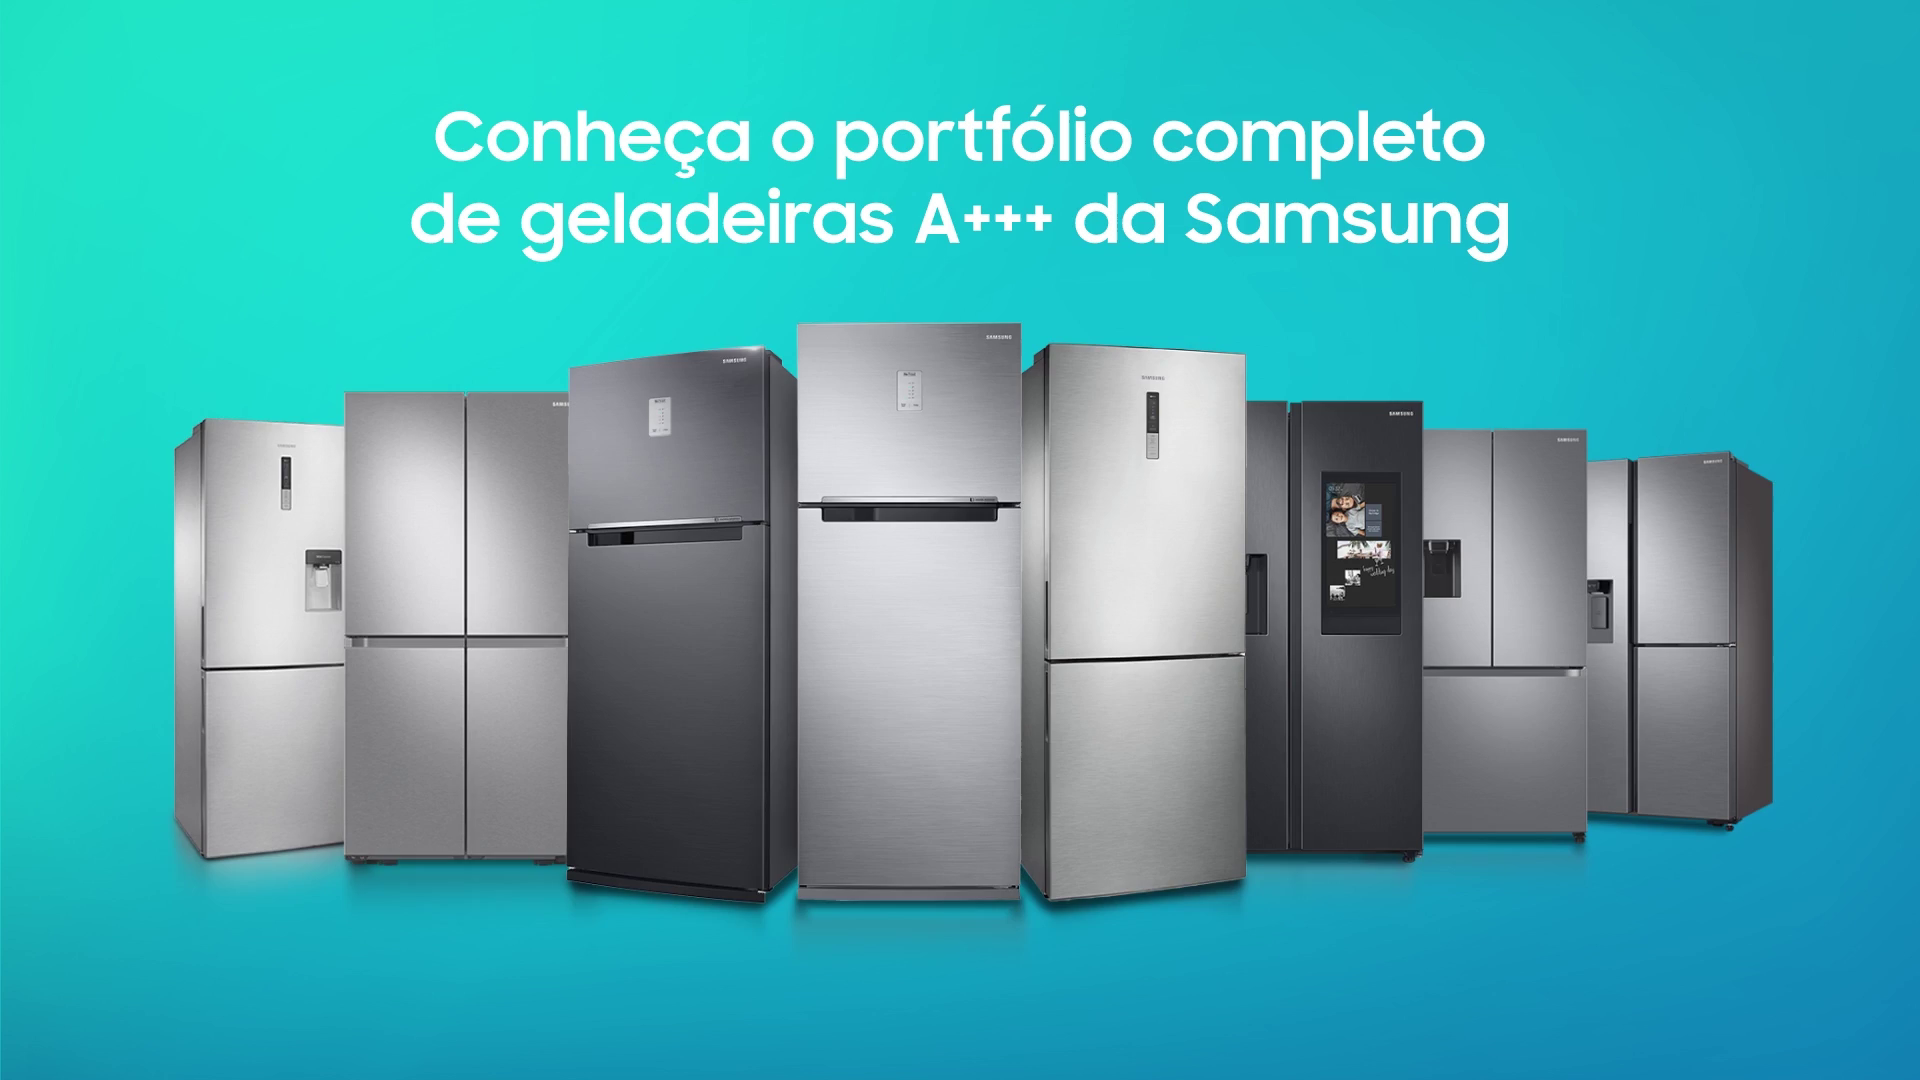 Classificação energética dos frigoríficos, explicada pela #Samsung